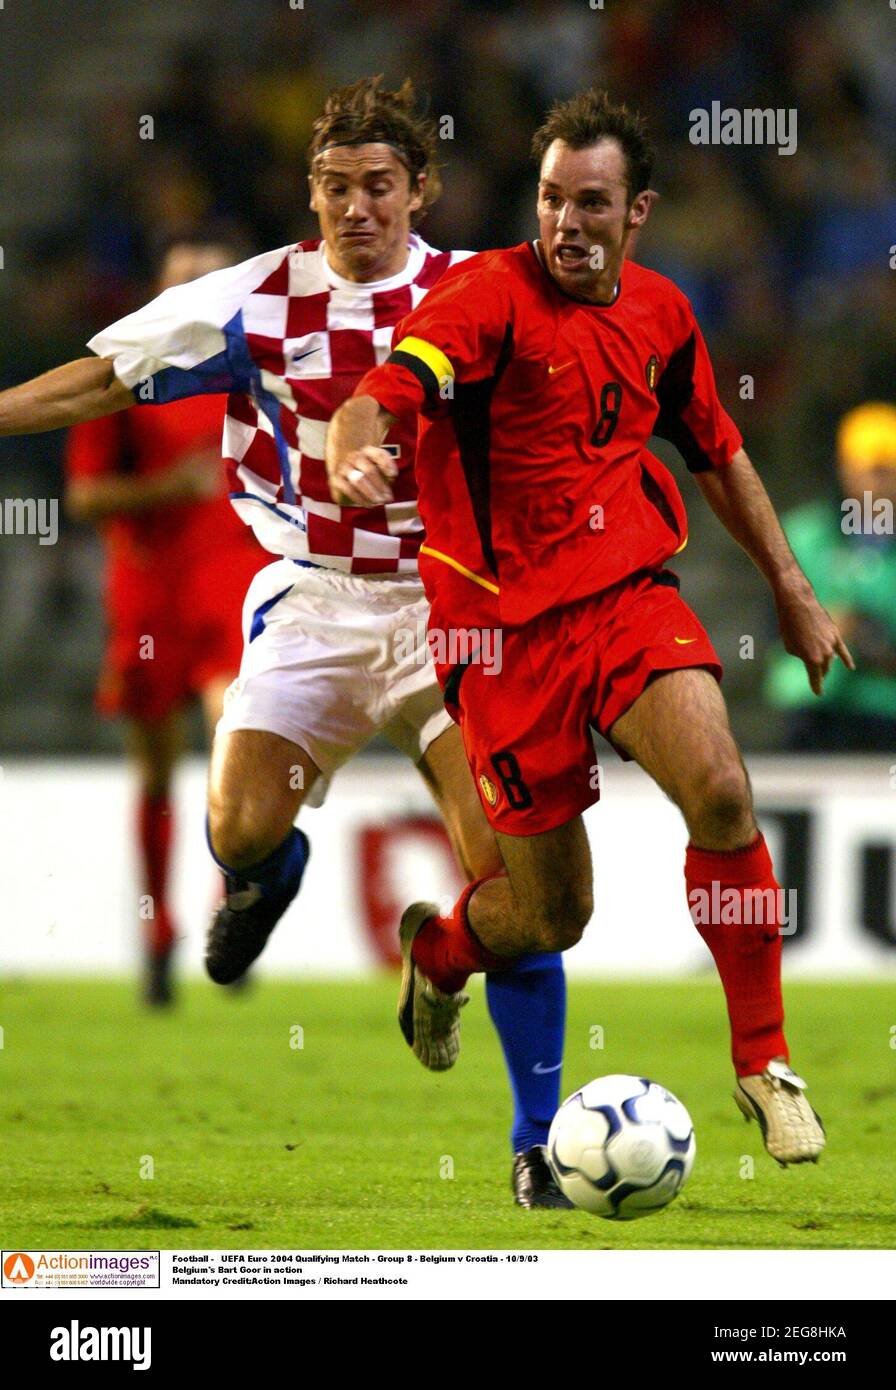 Football - UEFA Euro 2004 Qualifying Match - Group 8 - Belgium v Croatia -  10/9/03 Belgium's Bart Goor in action Mandatory Credit:Action Images /  Richard Heathcote Stock Photo - Alamy